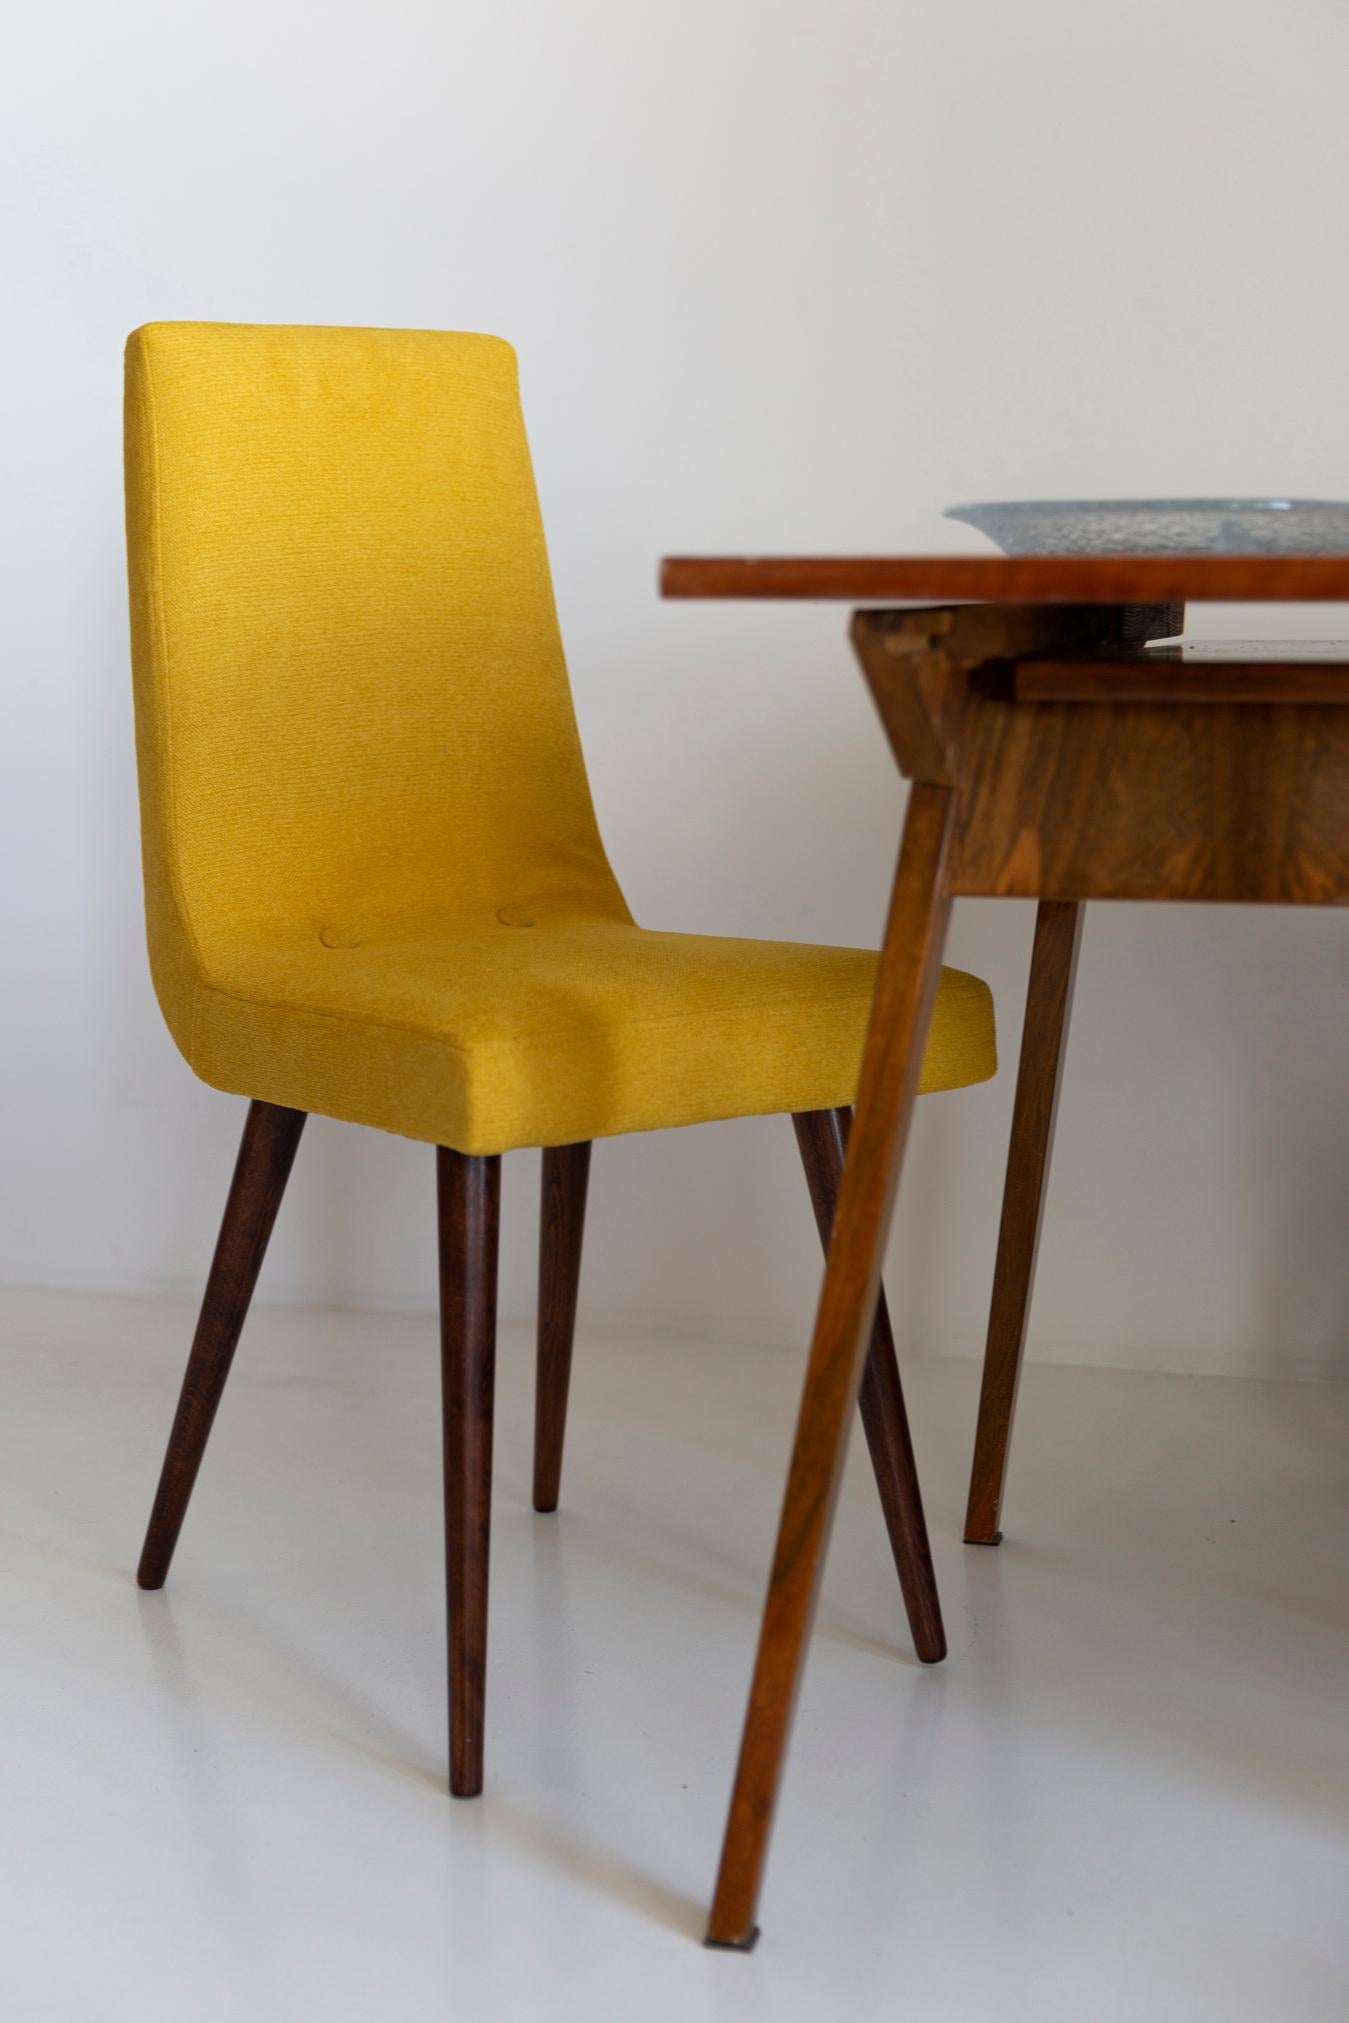 Stuhl entworfen von Prof. Rajmund Halas. Wurden aus Buchenholz hergestellt. Der Stuhl ist komplett neu gepolstert, das Holzwerk wurde gereinigt und aufgefrischt. Wir haben matten Lack verwendet. Sitz und Rückenlehne sind mit einem senfgelben,